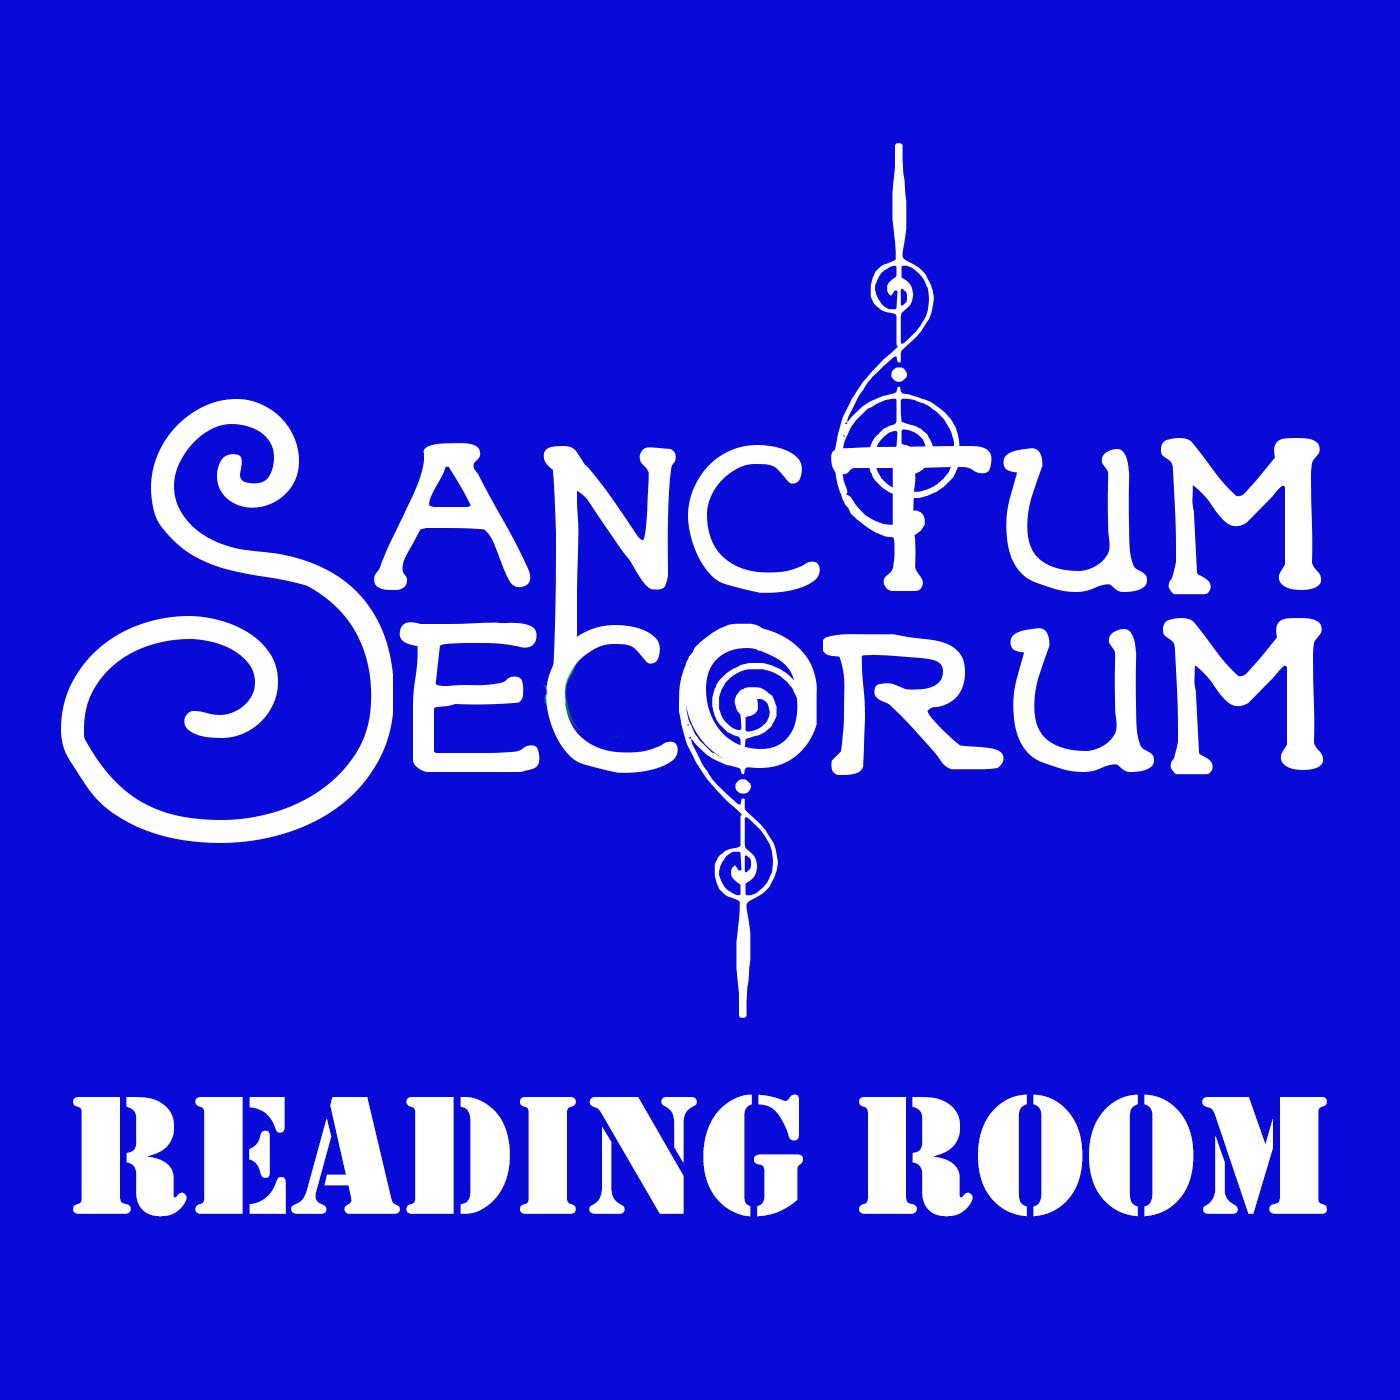 Sanctum Secorum Reading Room #10 - Horrible Imaginings